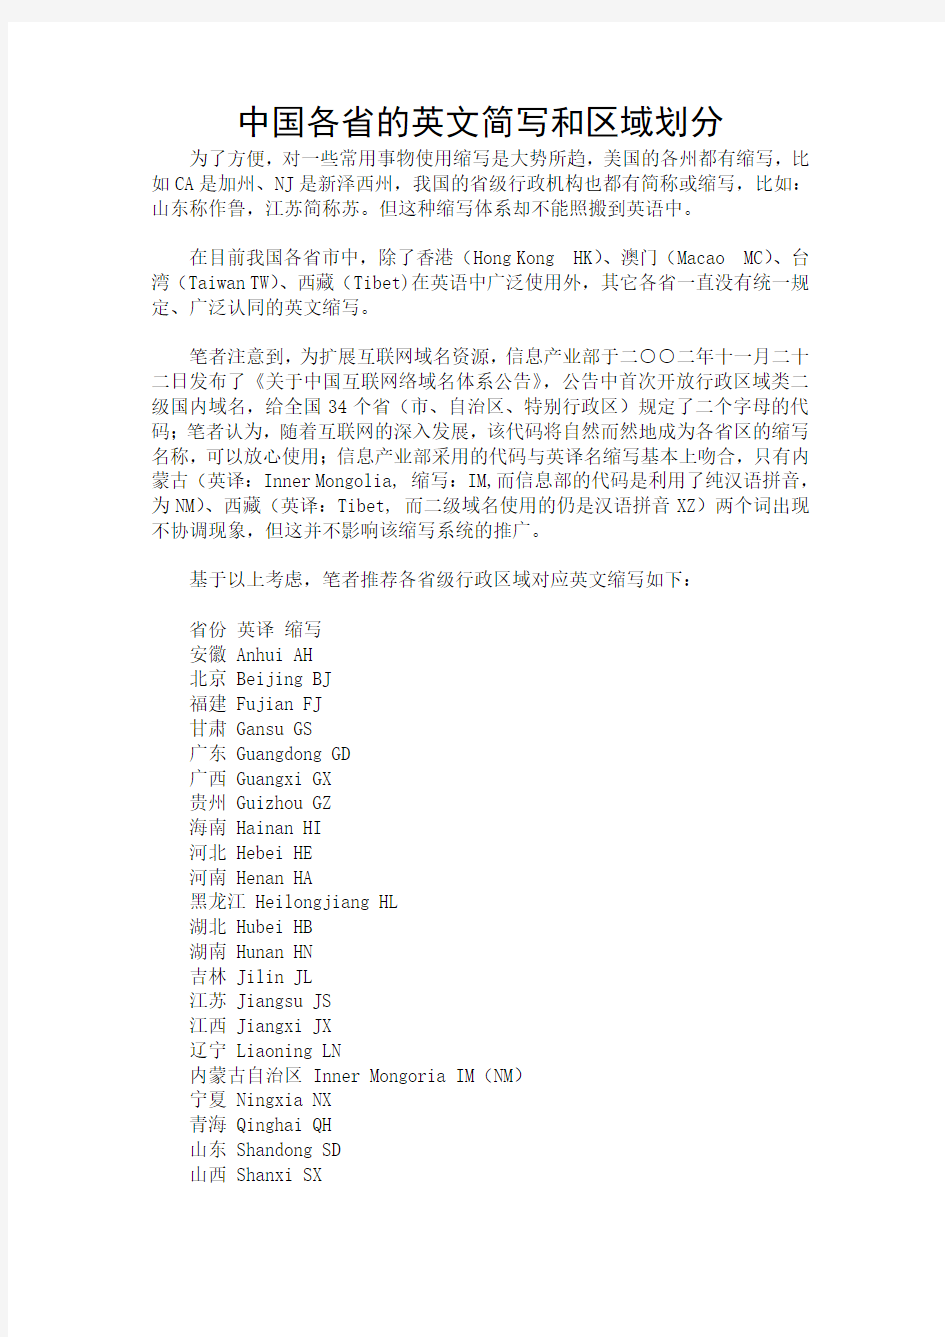 中国各省的英文简写和区域划分 